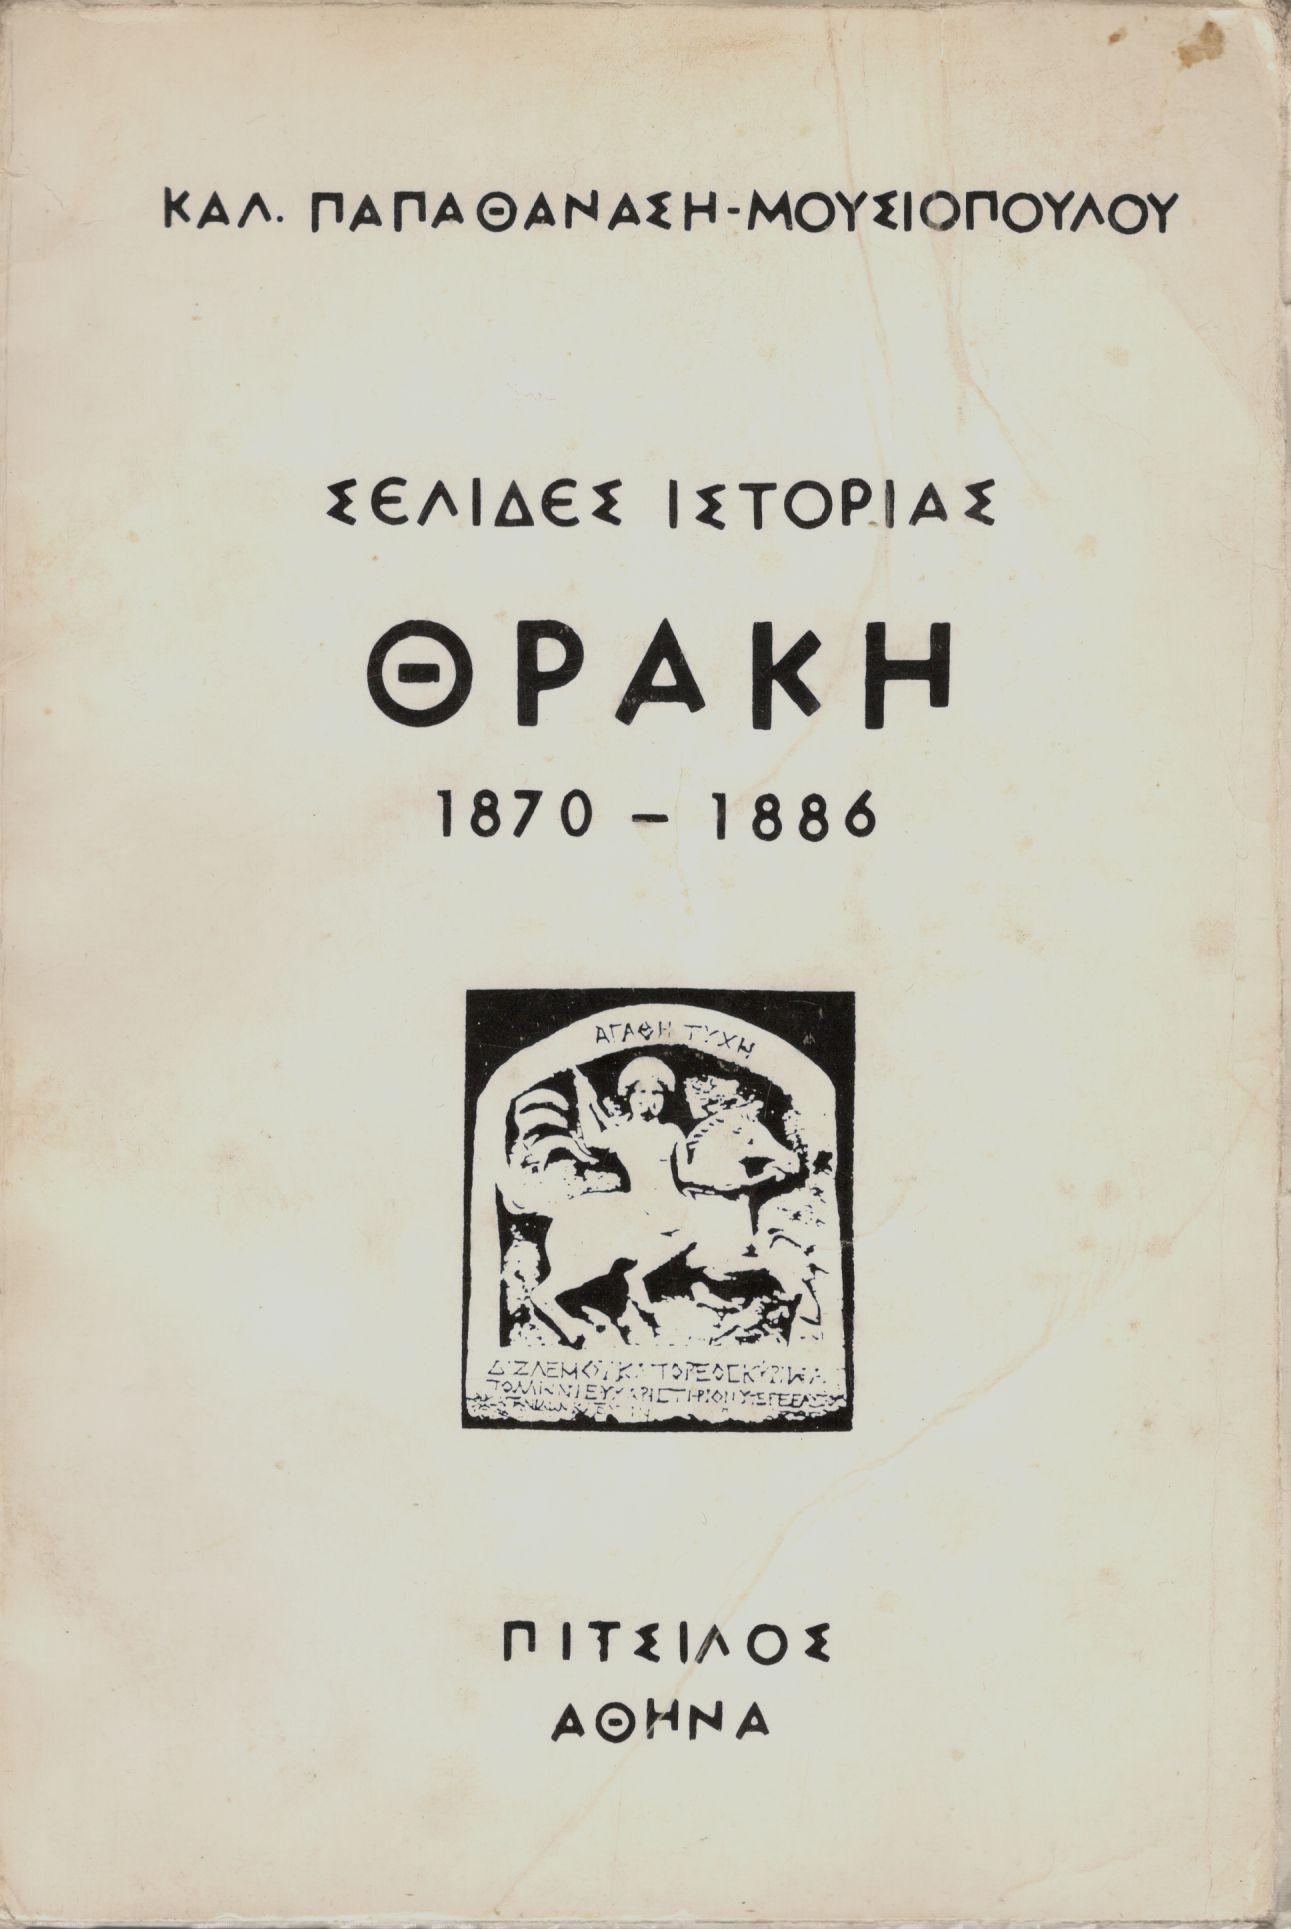 ΣΕΛΙΔΕΣ ΙΣΤΟΡΙΑΣ, ΘΡΑΚΗ (1870 - 1886)